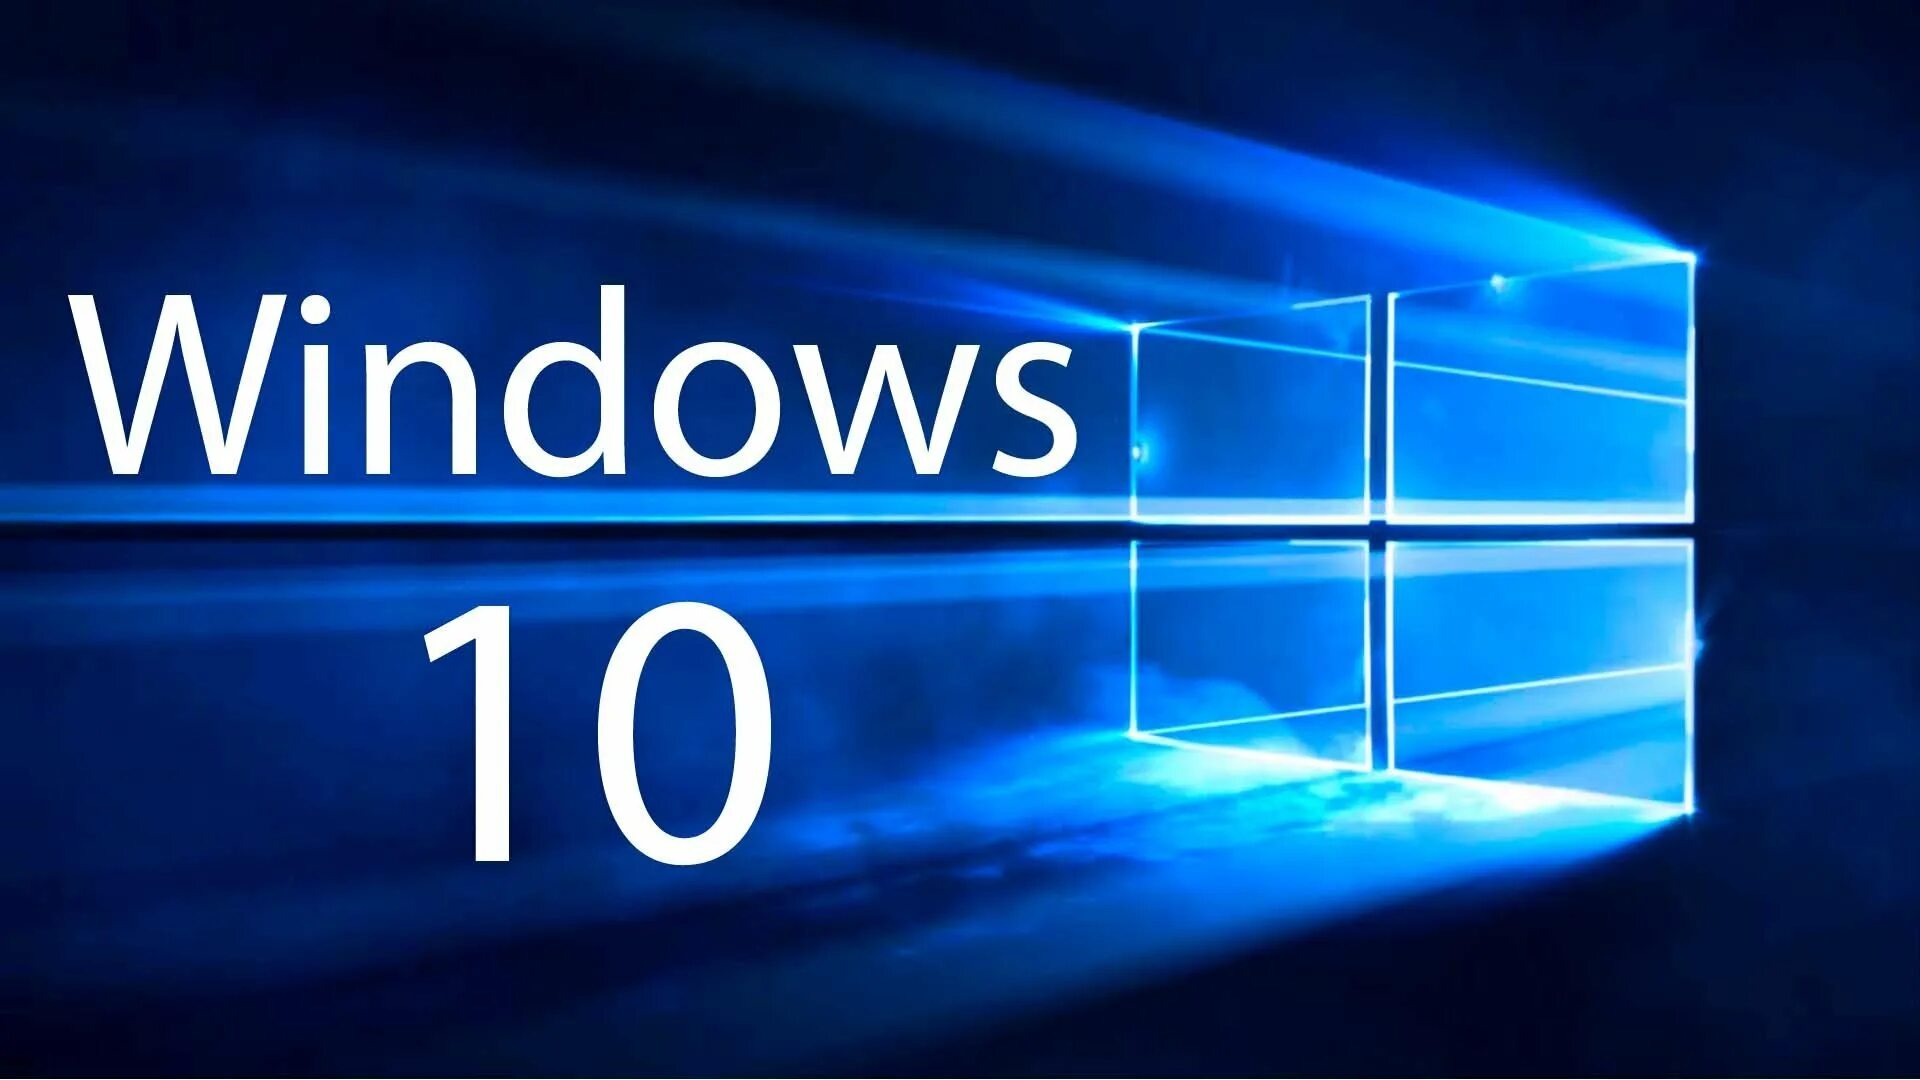 Картинки виндовс 10. Microsoft Windows 10. ОС виндовс 10. Логотип виндовс 10.